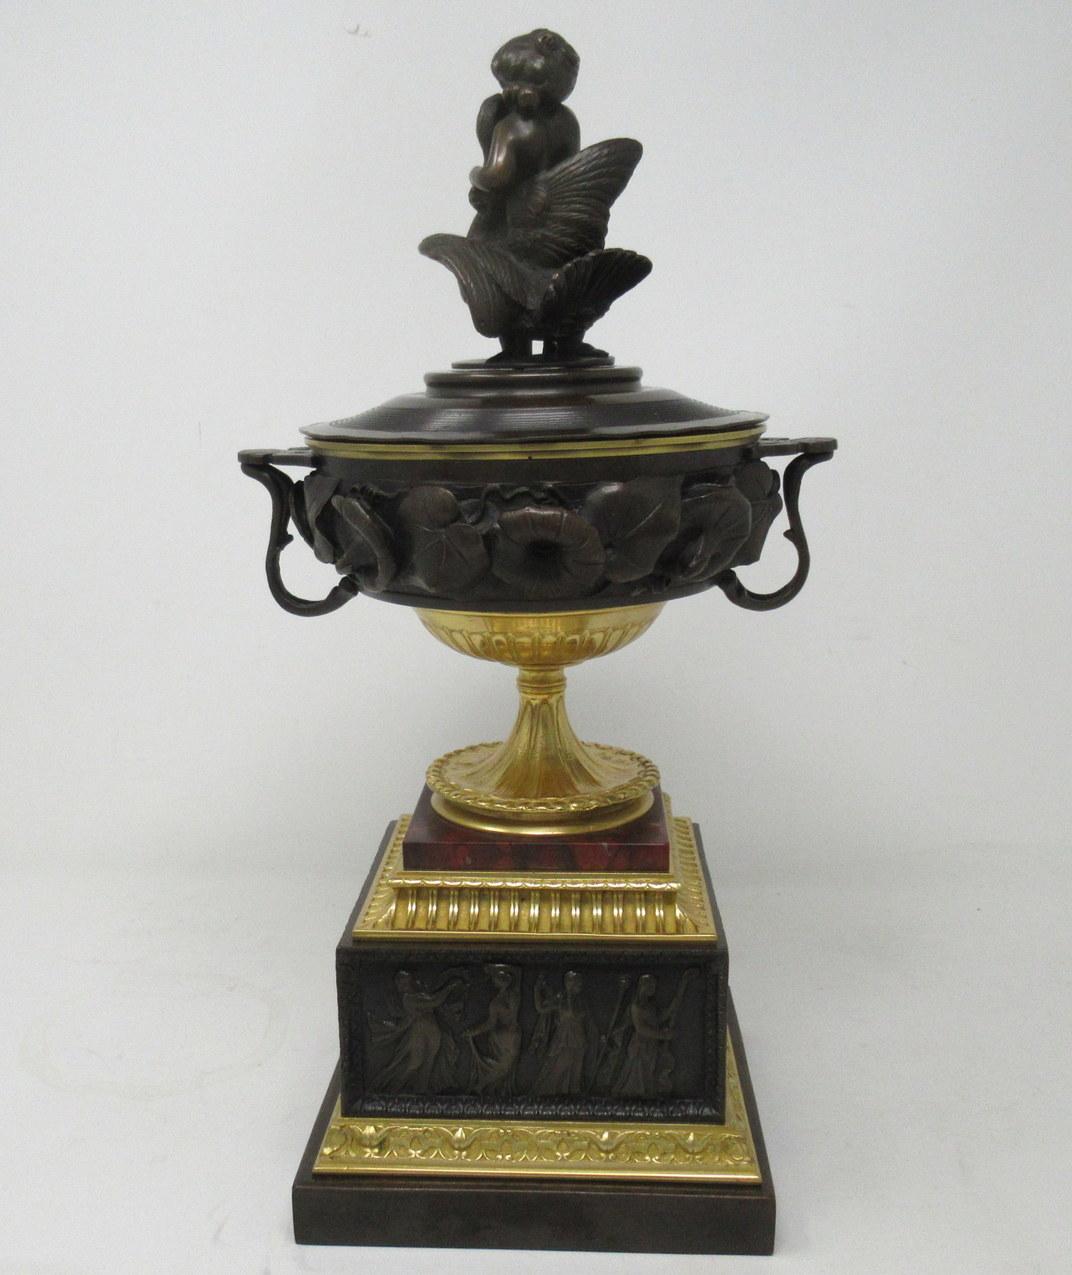 Hervorragendes Beispiel für eine französische Grand Tour Urne mit Deckel aus Ormolu und Bronzeguss in Museumsqualität mit zwei Griffen. Erstes Viertel des neunzehnten Jahrhunderts, möglicherweise Regency-Zeit. 

Die Hauptschale mit aufwändig